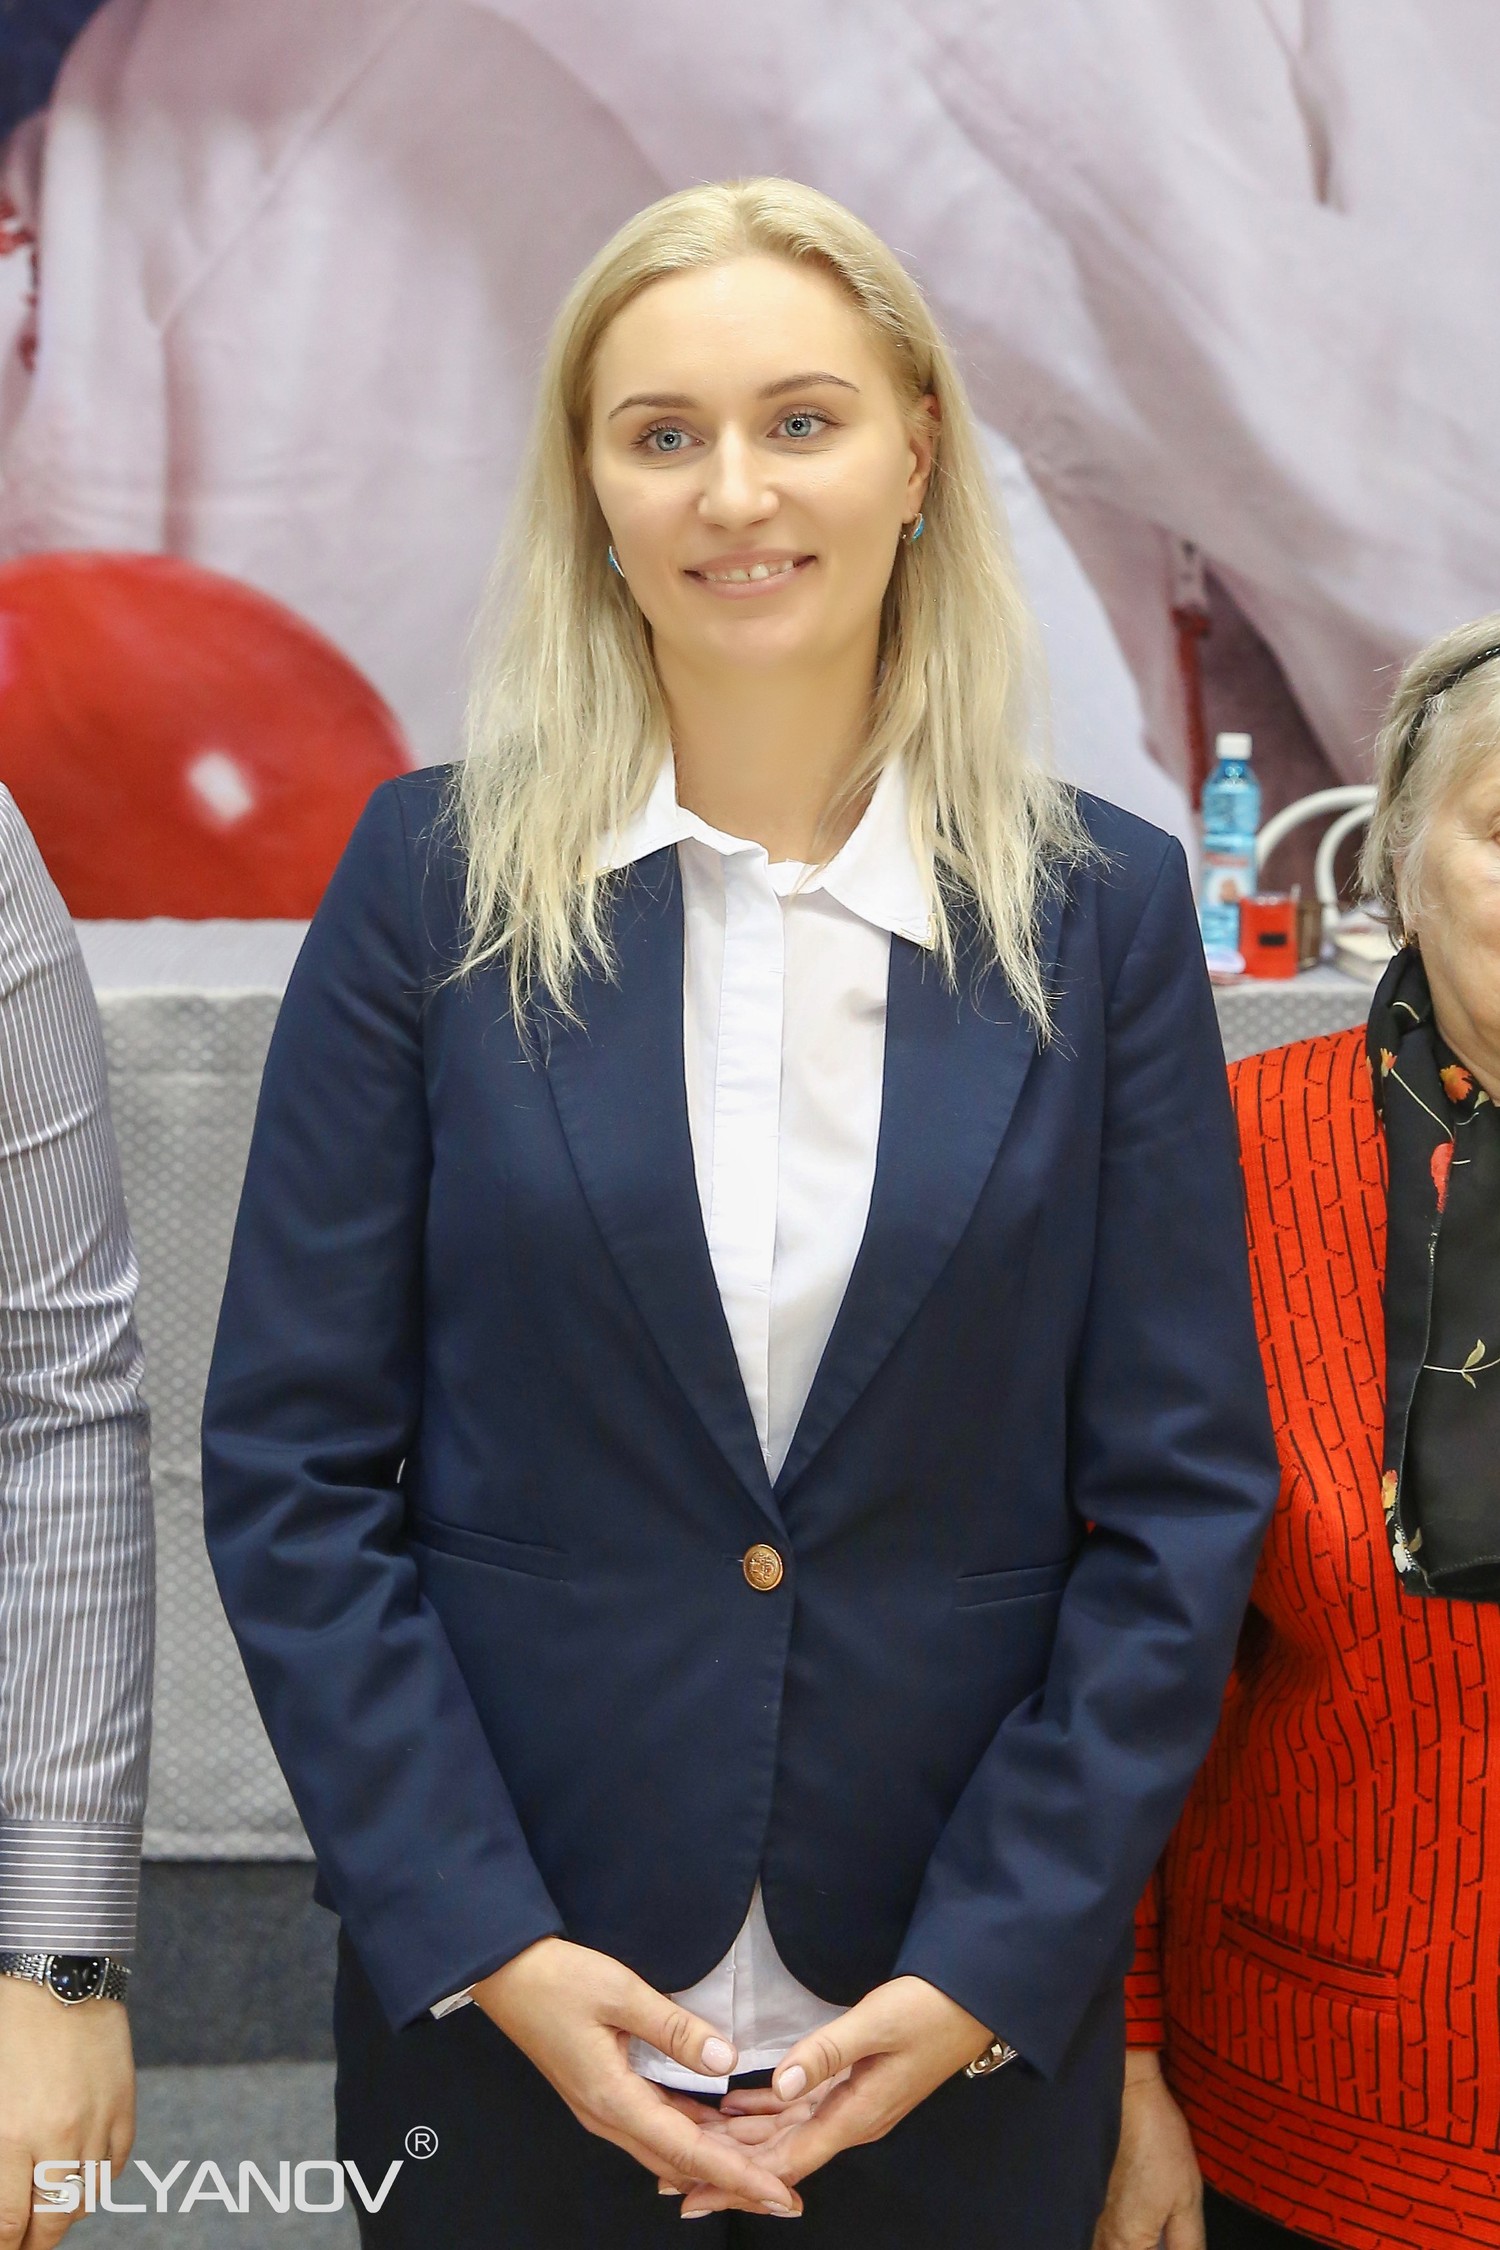 Турнир на призы двукратной олимпийской чемпионки Елены Посевиной (11-13 ноября 2016 г.Бердск)